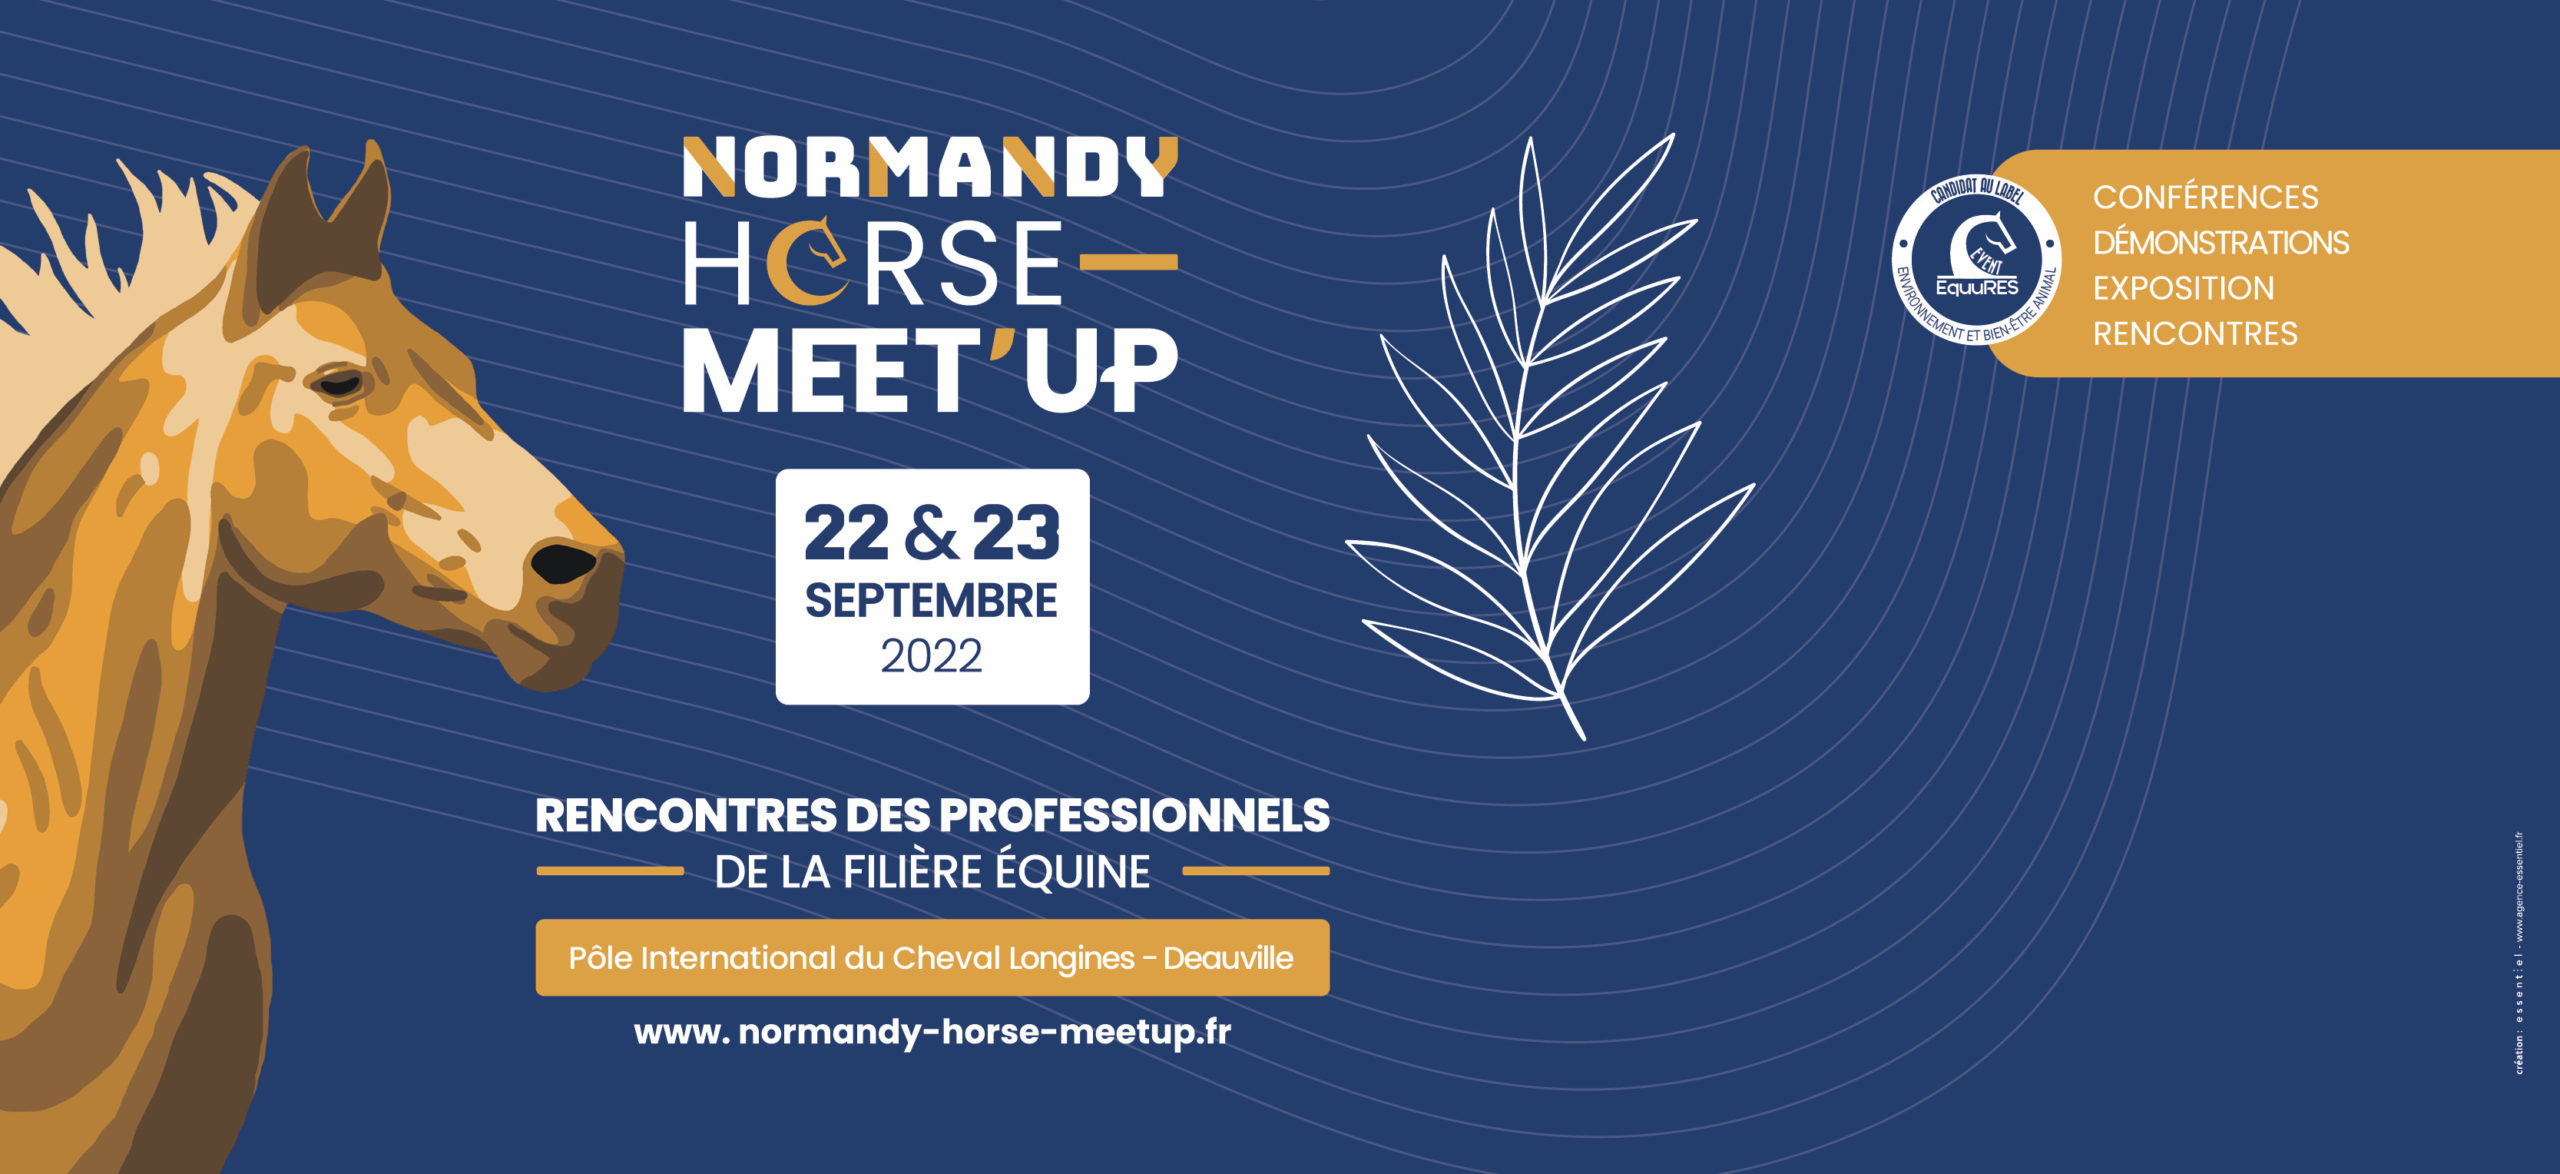 Vos invitations pour le Normandy Horse Meet’Up les 22 et 23 septembre 2022 !